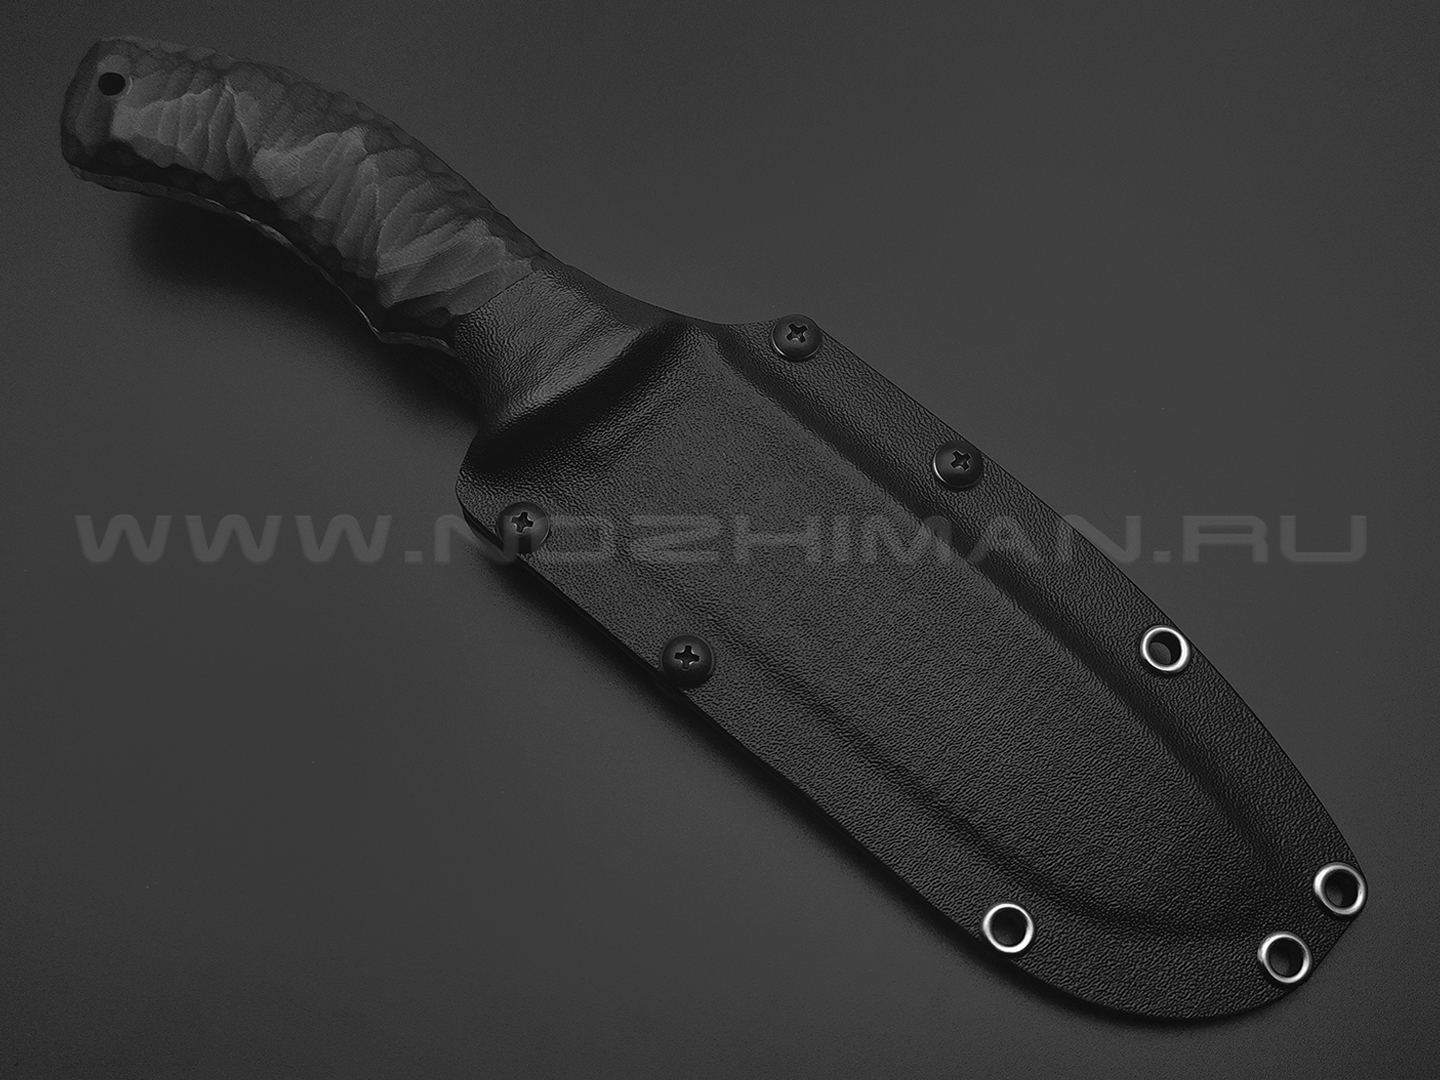 Волчий Век нож Команданте Custom сталь 95Х18 WA травление, рукоять G10 black